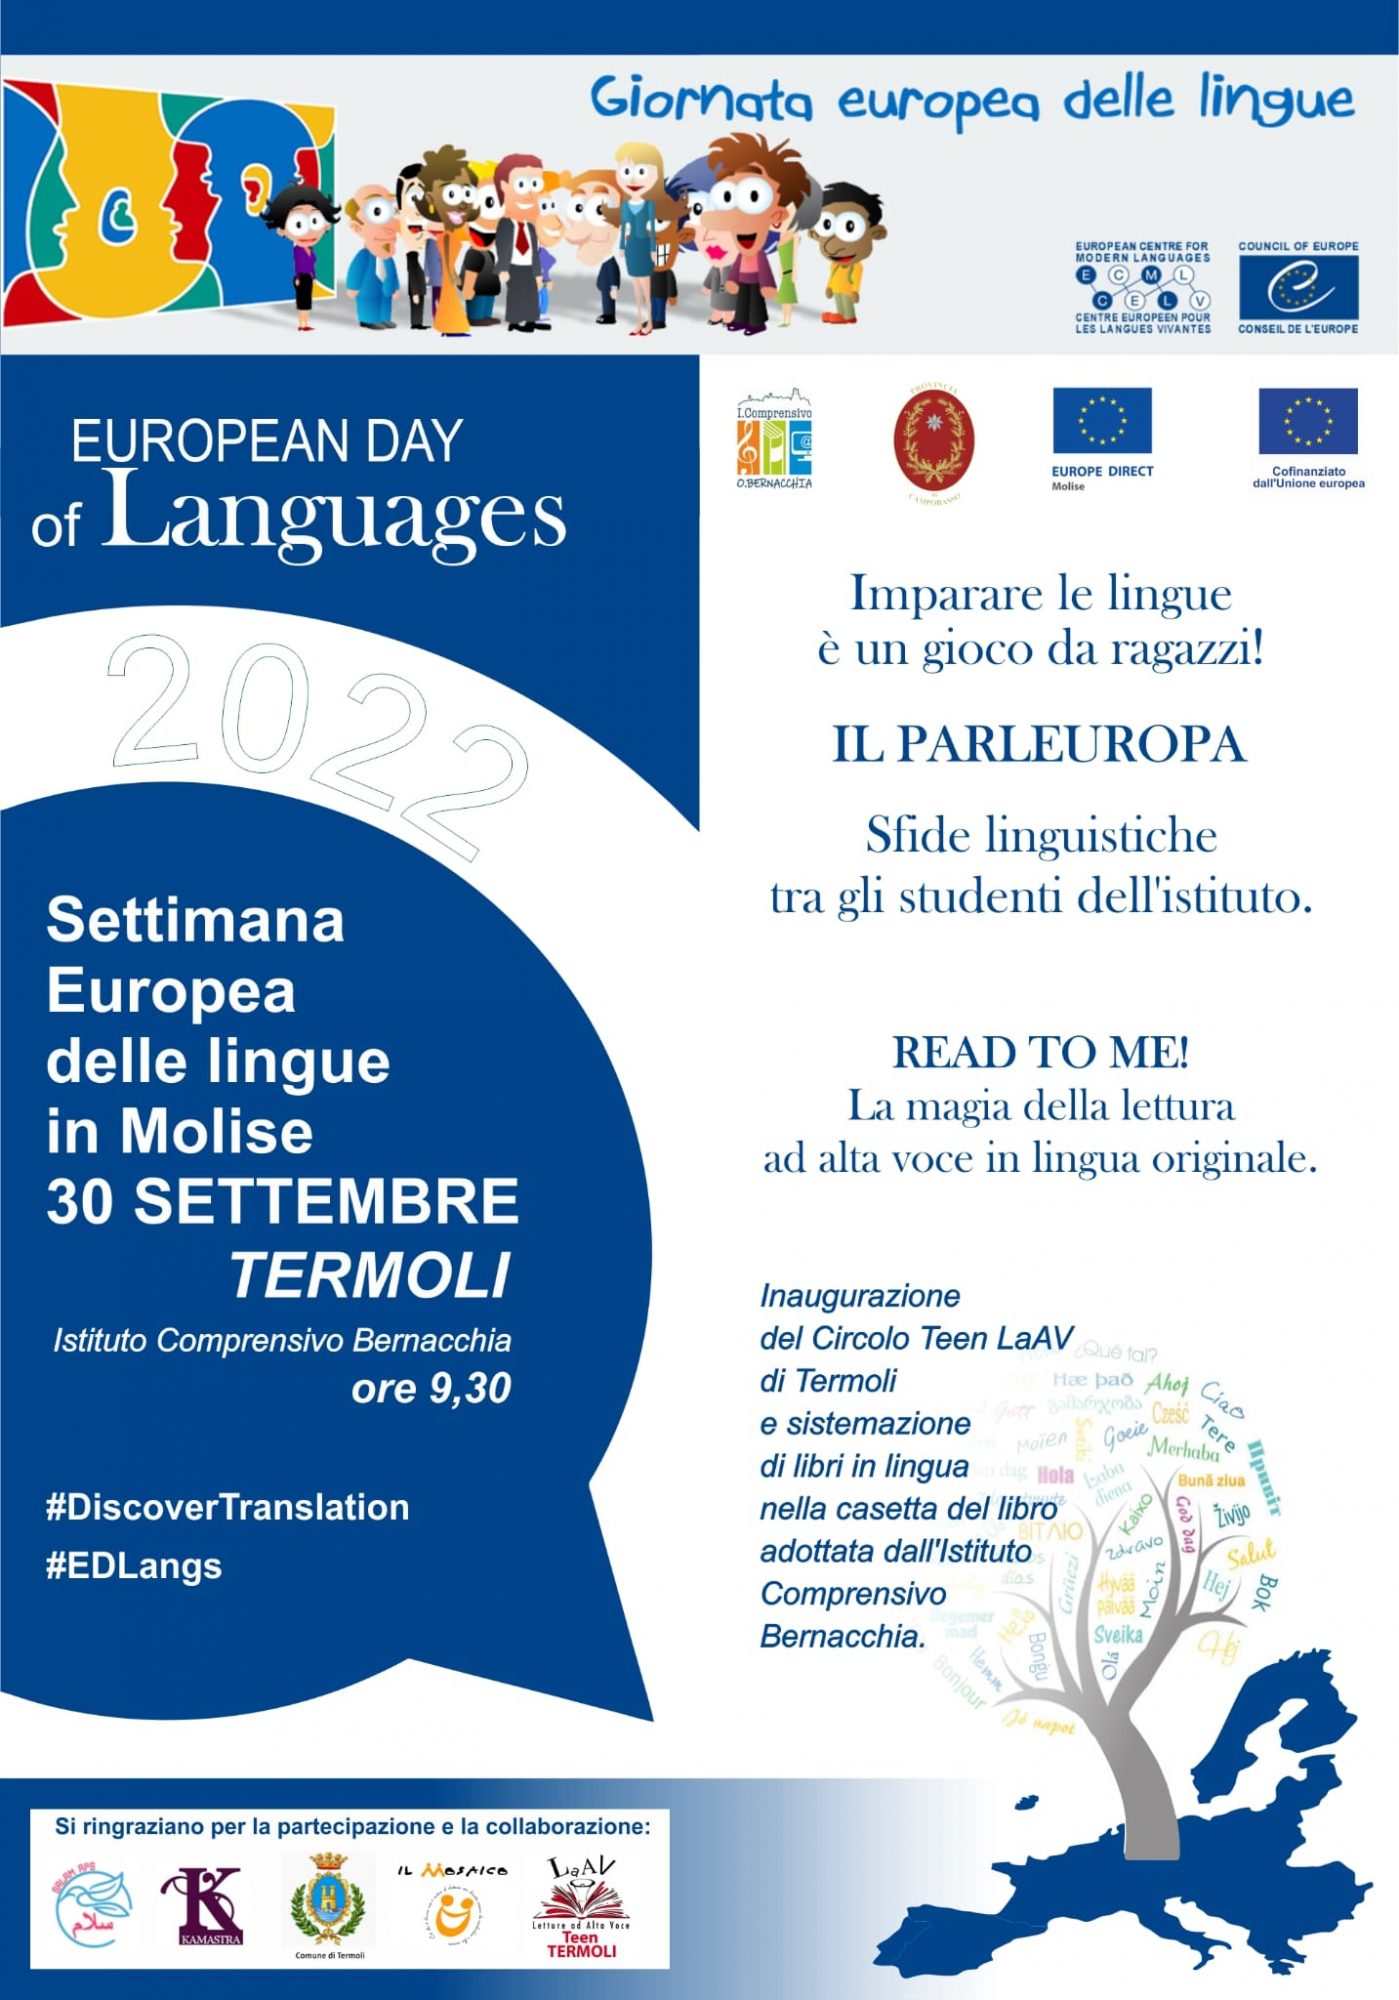 Settimana Europea delle Linguee